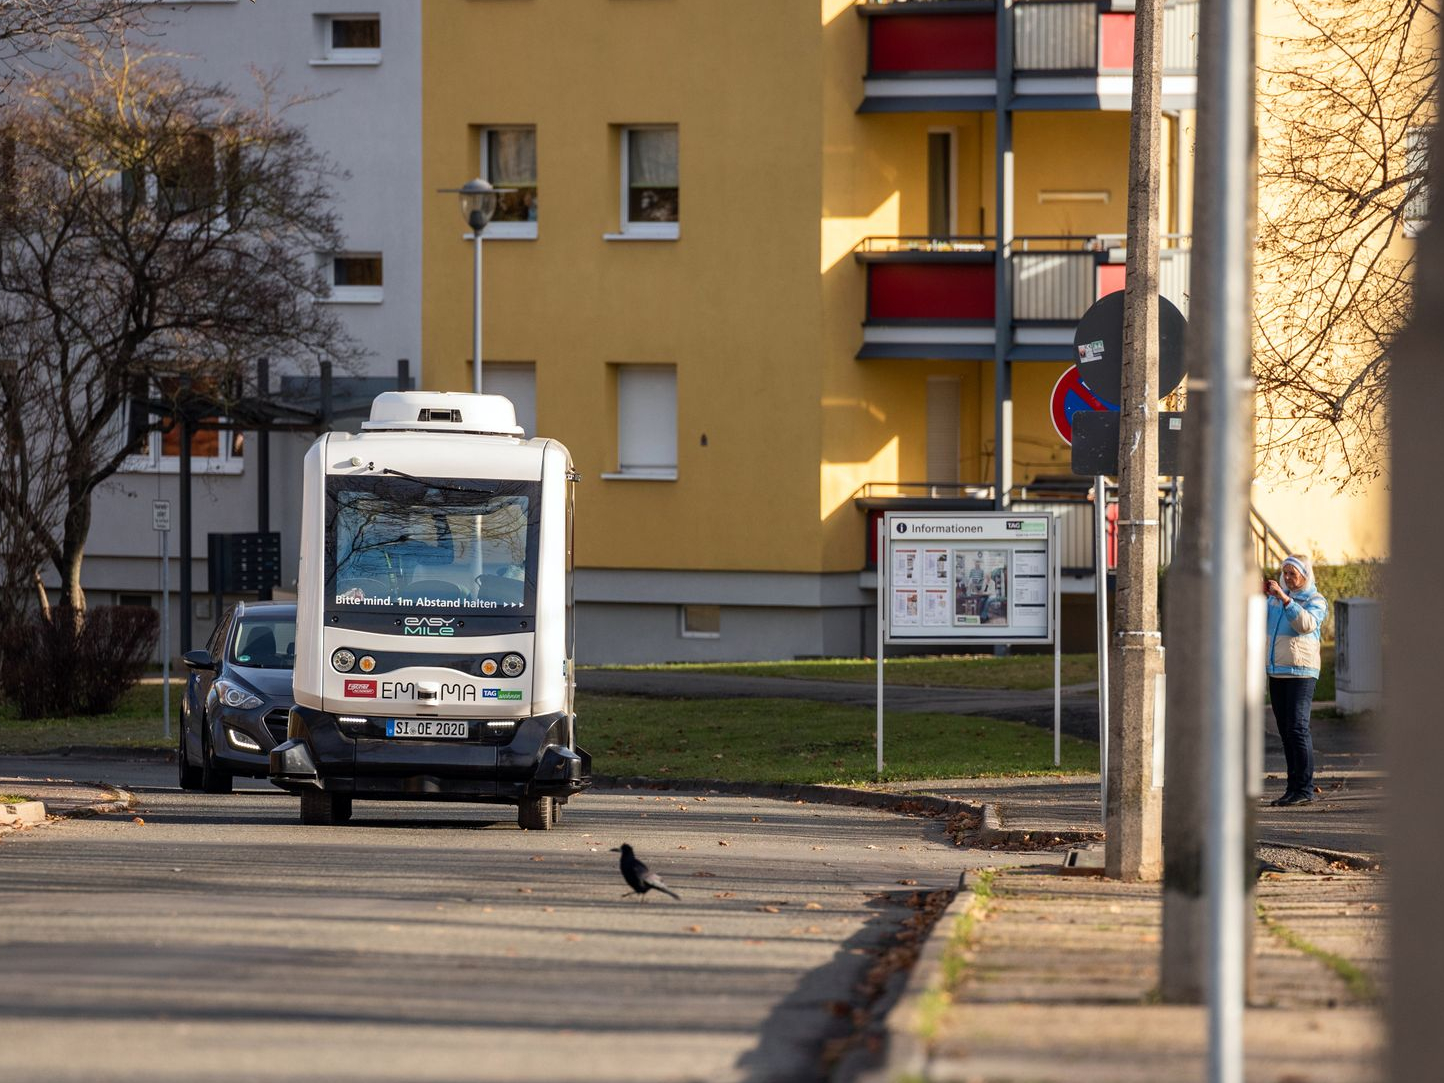 Mit 15 km/h fährt EMMA durch Lusan. Das Besondere: mit dem selbstfahrenden Kleinbus wird die letzte Meile geschlossen zwischen Tramstation, Einkaufszentrum und Wohnblock. Vor allem für ältere Mieter ein wichtiger Service.